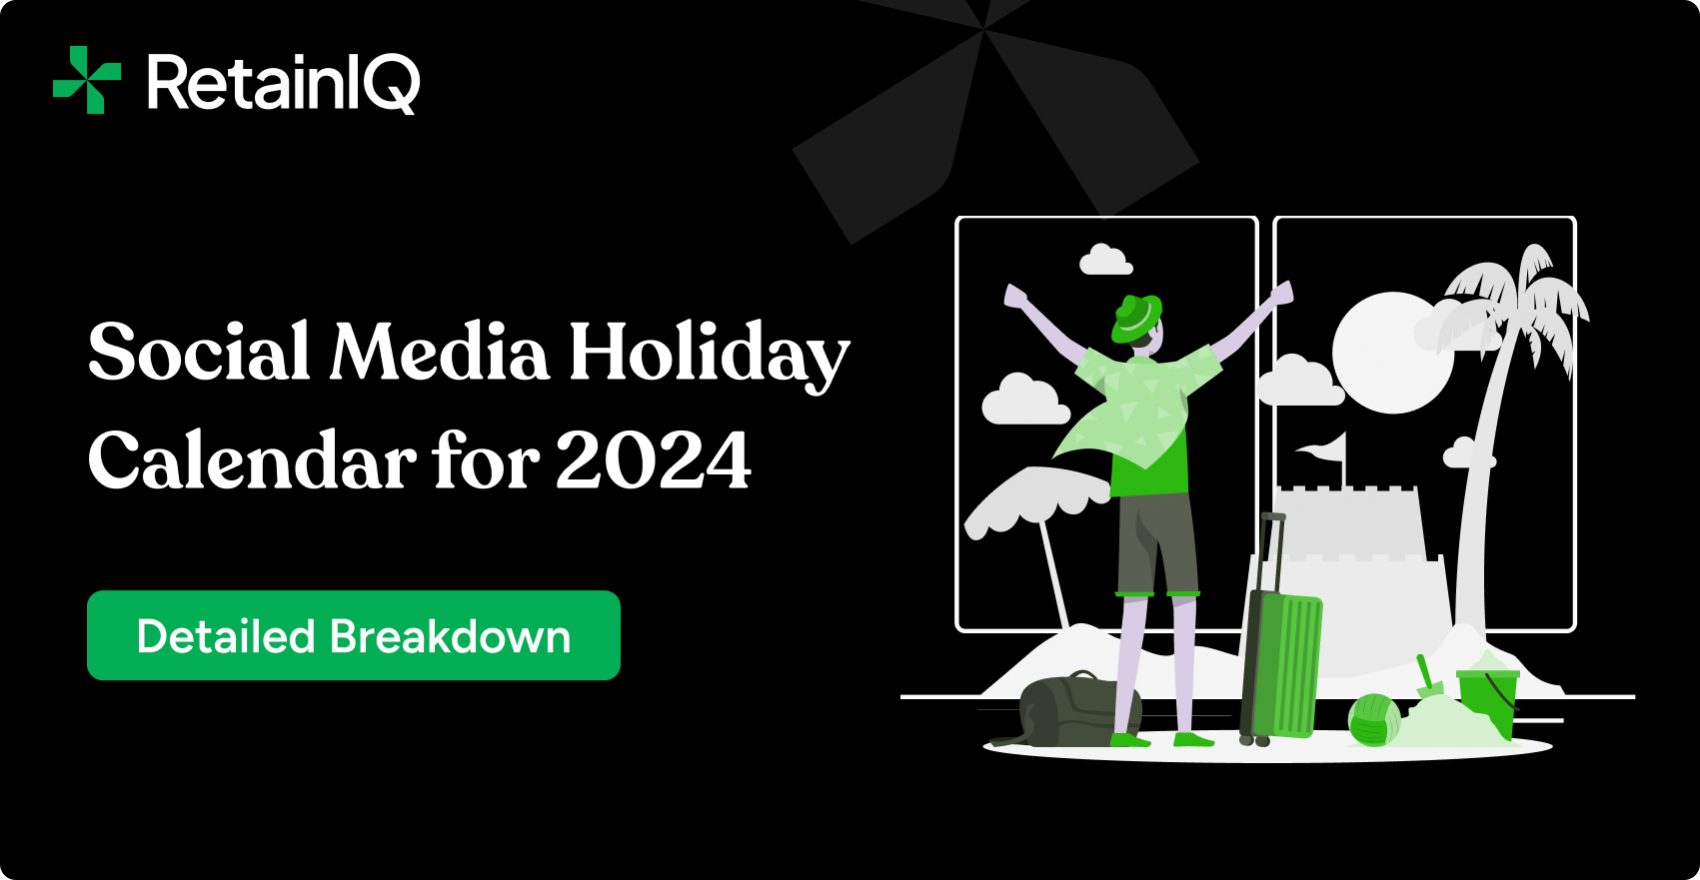 Social Media Holiday Calendar 2024